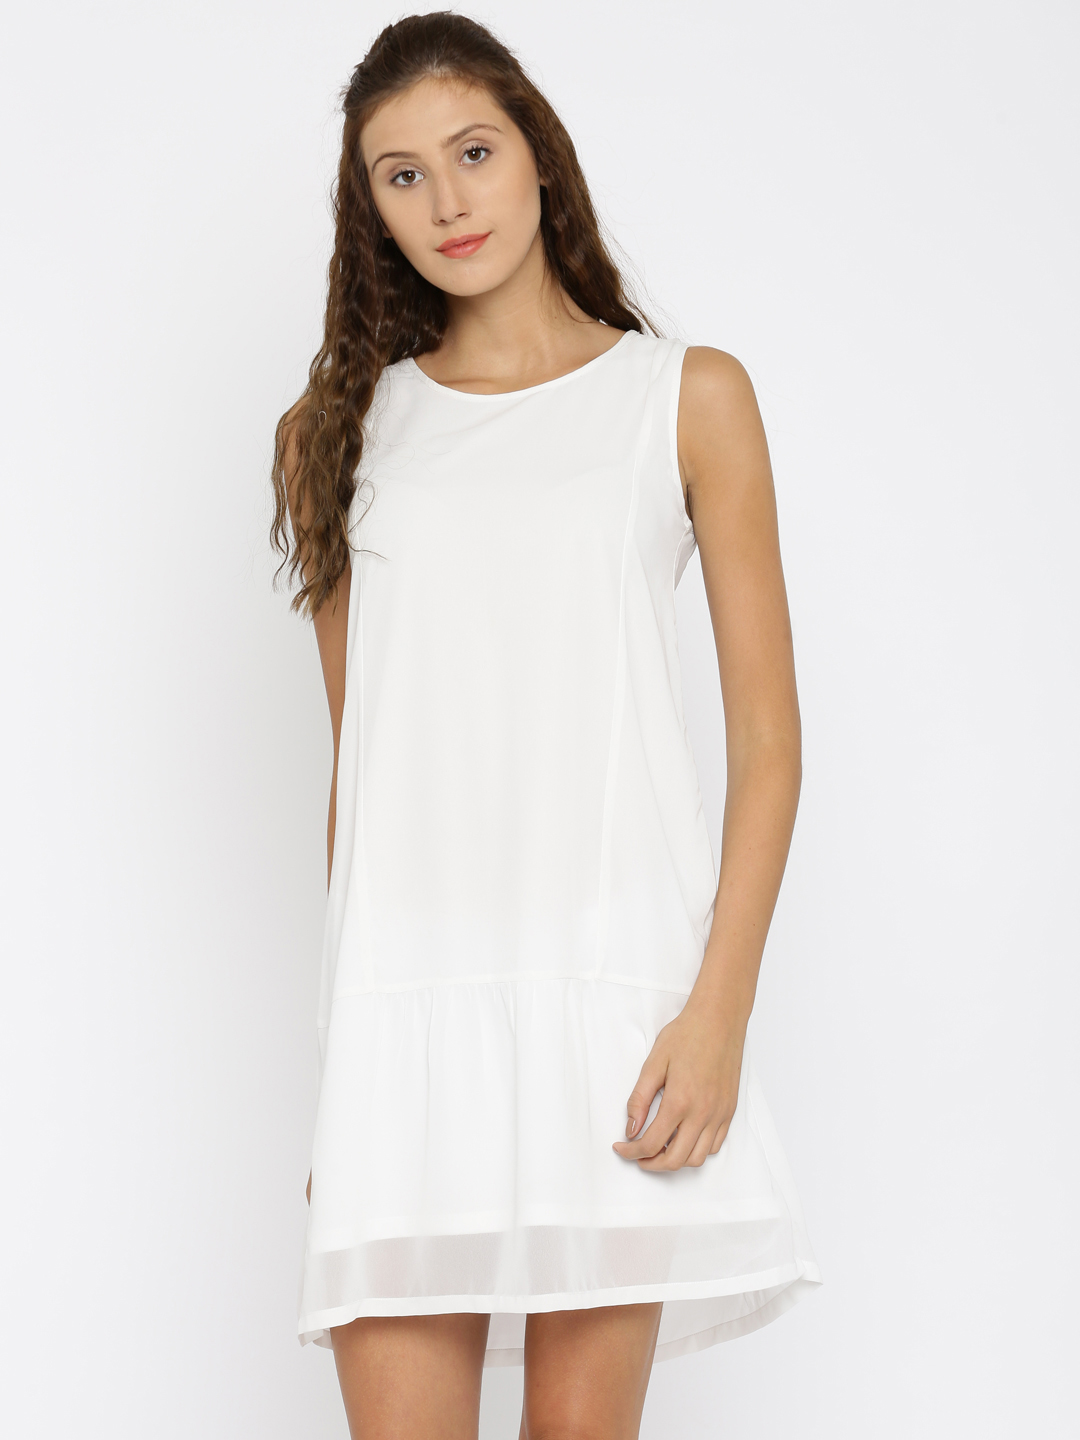 Van Heusen Woman White Self-Design A-Line Dress